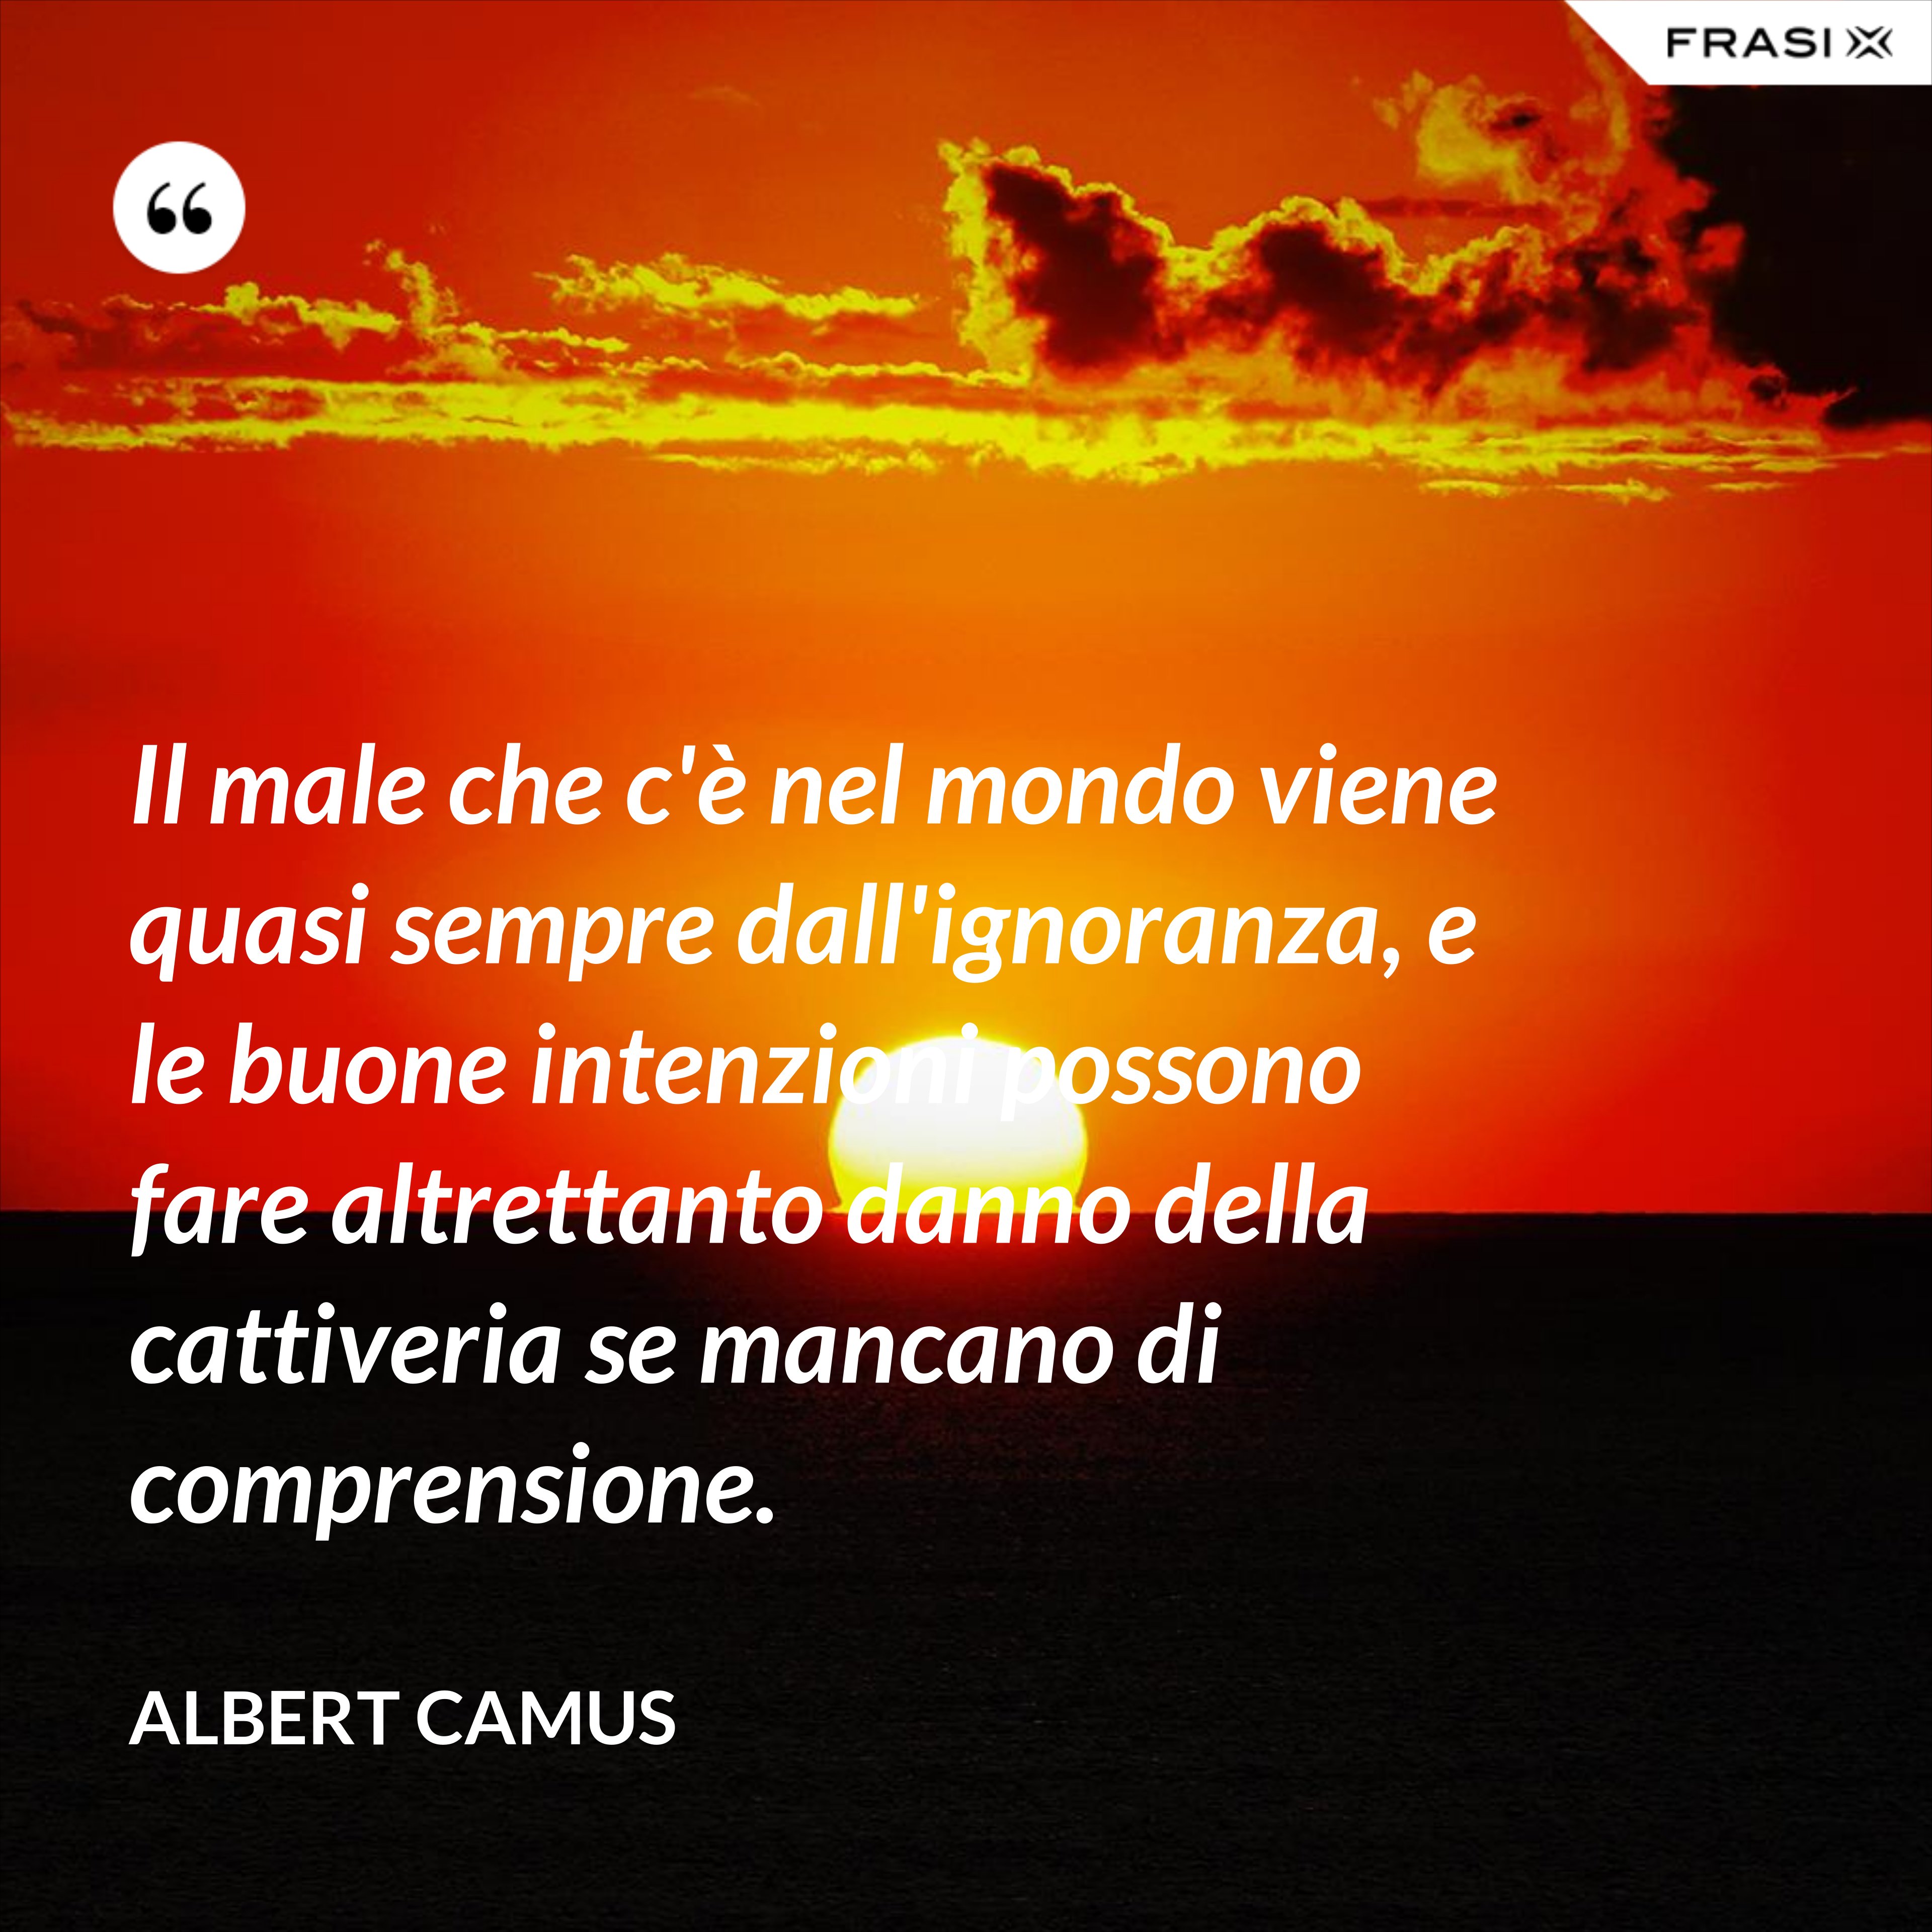 Il male che c'è nel mondo viene quasi sempre dall'ignoranza, e le buone intenzioni possono fare altrettanto danno della cattiveria se mancano di comprensione. - Albert Camus